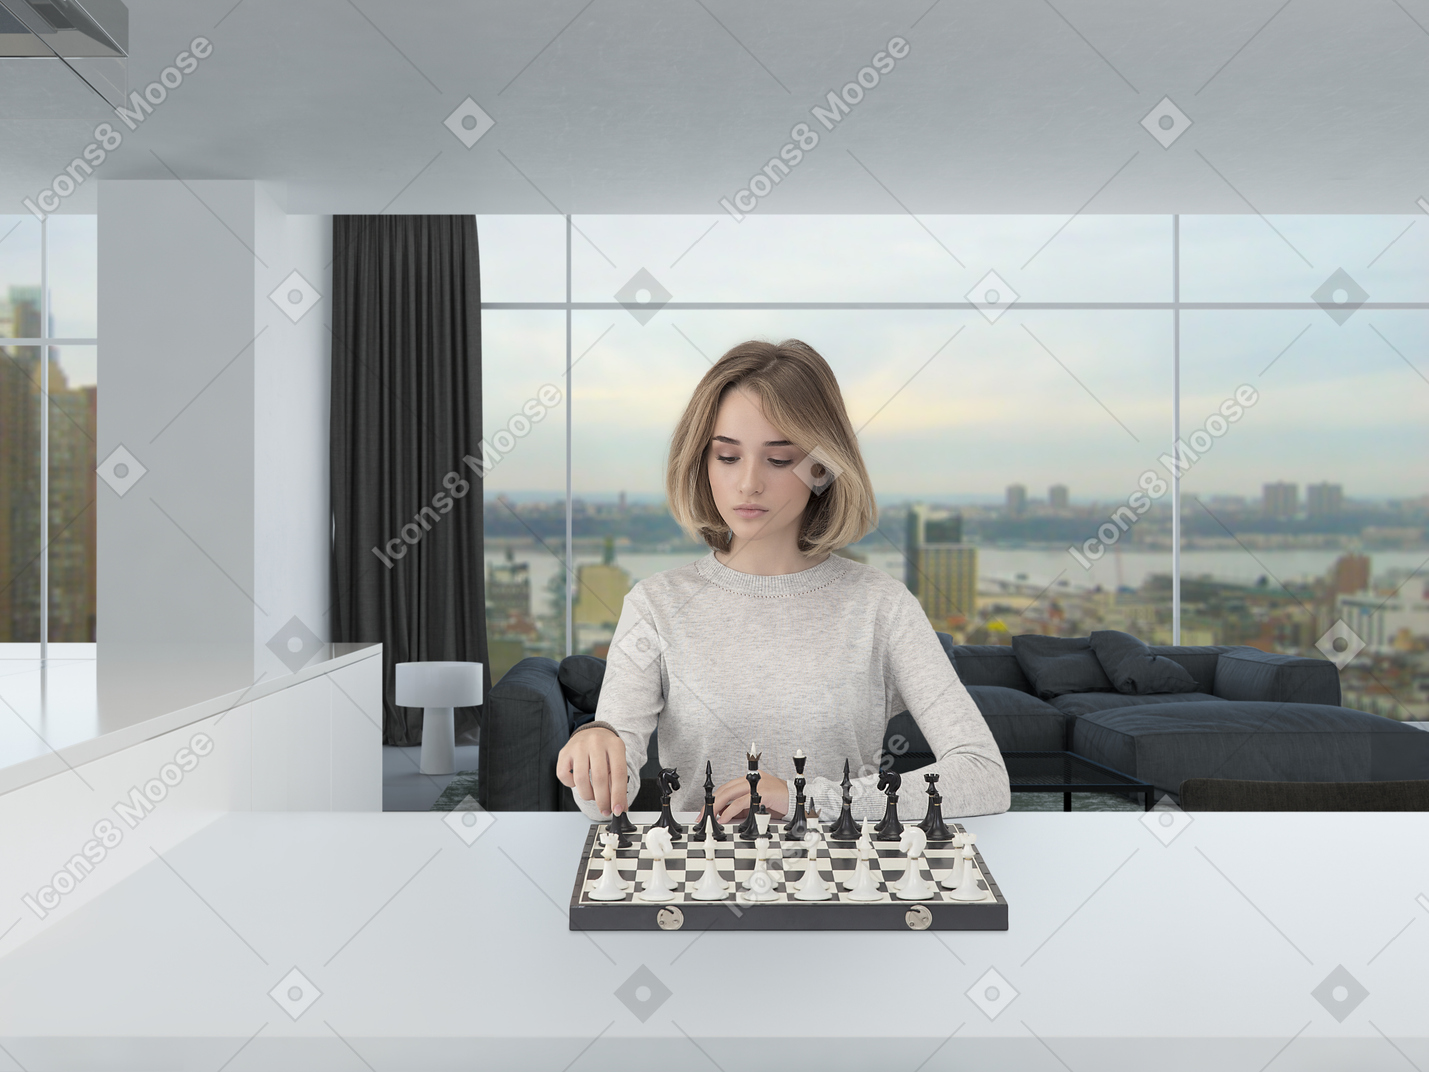 Mulher jovem e bonita em um jumper cinza claro, concentrada enquanto jogando xadrez em um espaçoso quarto de aparência moderna